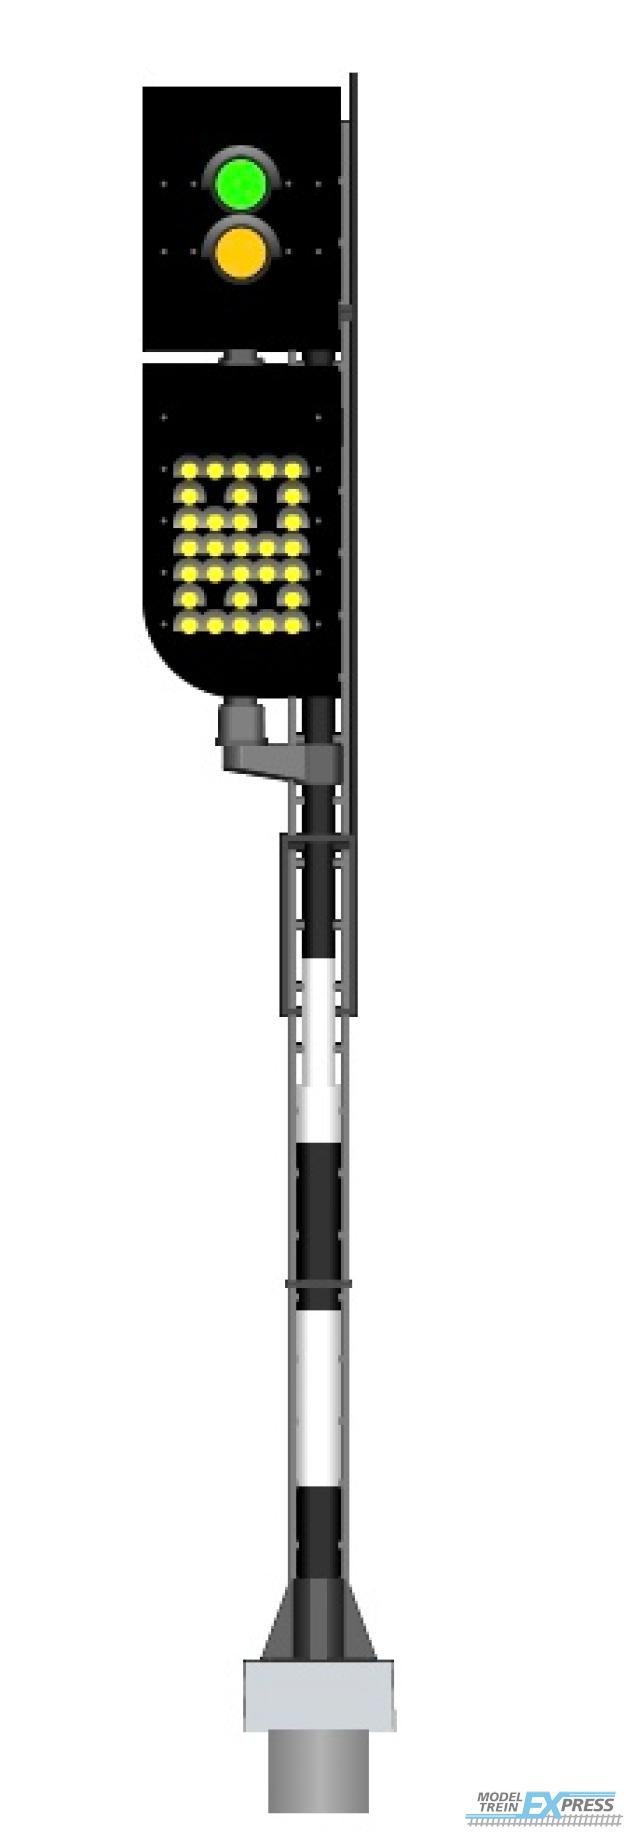 Mafen 913713 NS - Vorsignal mit Geschwindigkeitsanzeiger (Grün/Gelb) - links